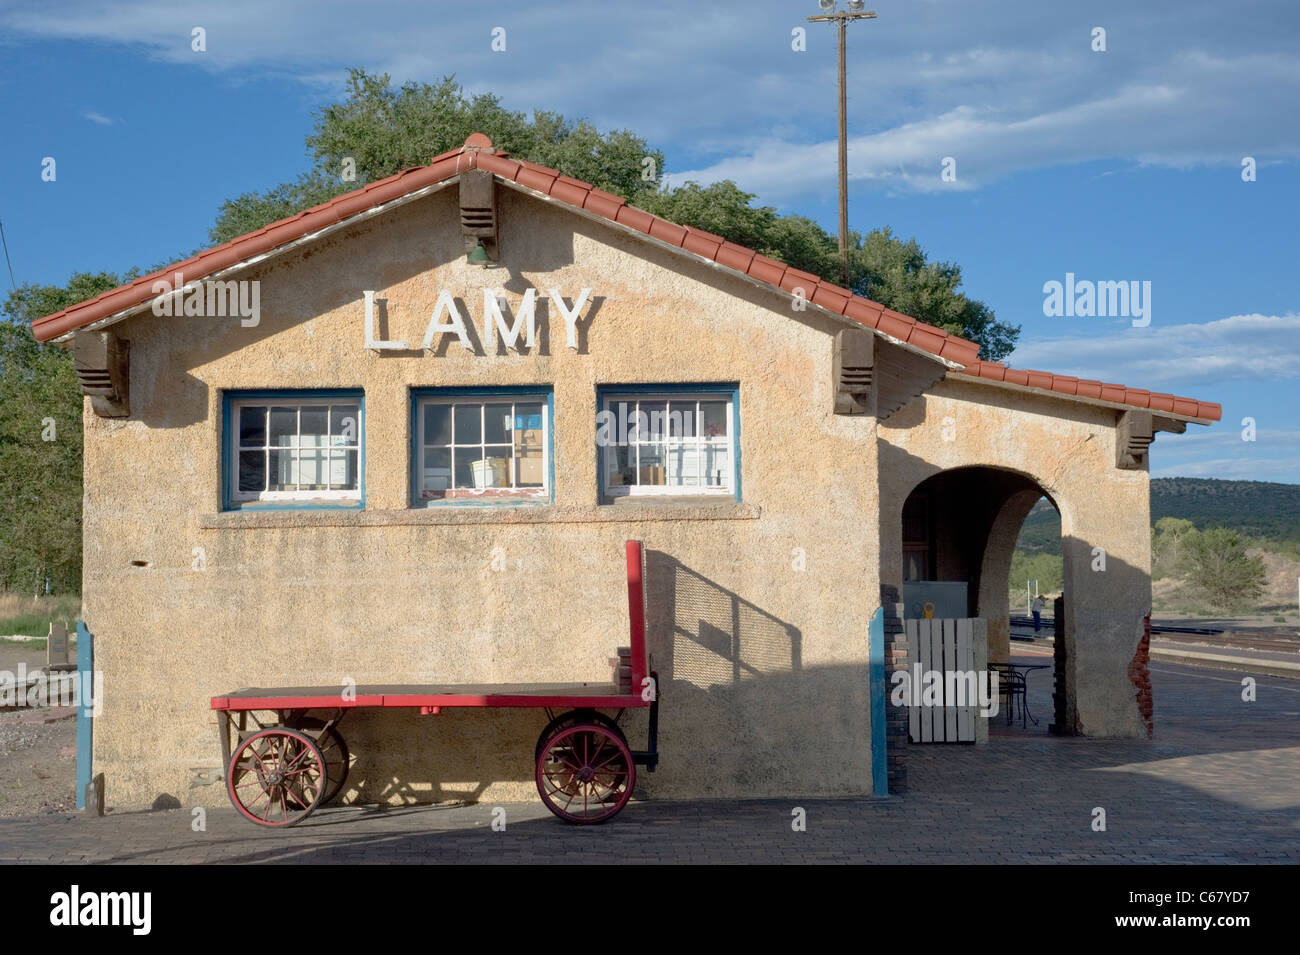 Lamy Amtrak station, construite en 1909 par l'Atchison, Topeka and Santa Fe Railway, terminus pour le Santa Fe Southern Railway. Banque D'Images